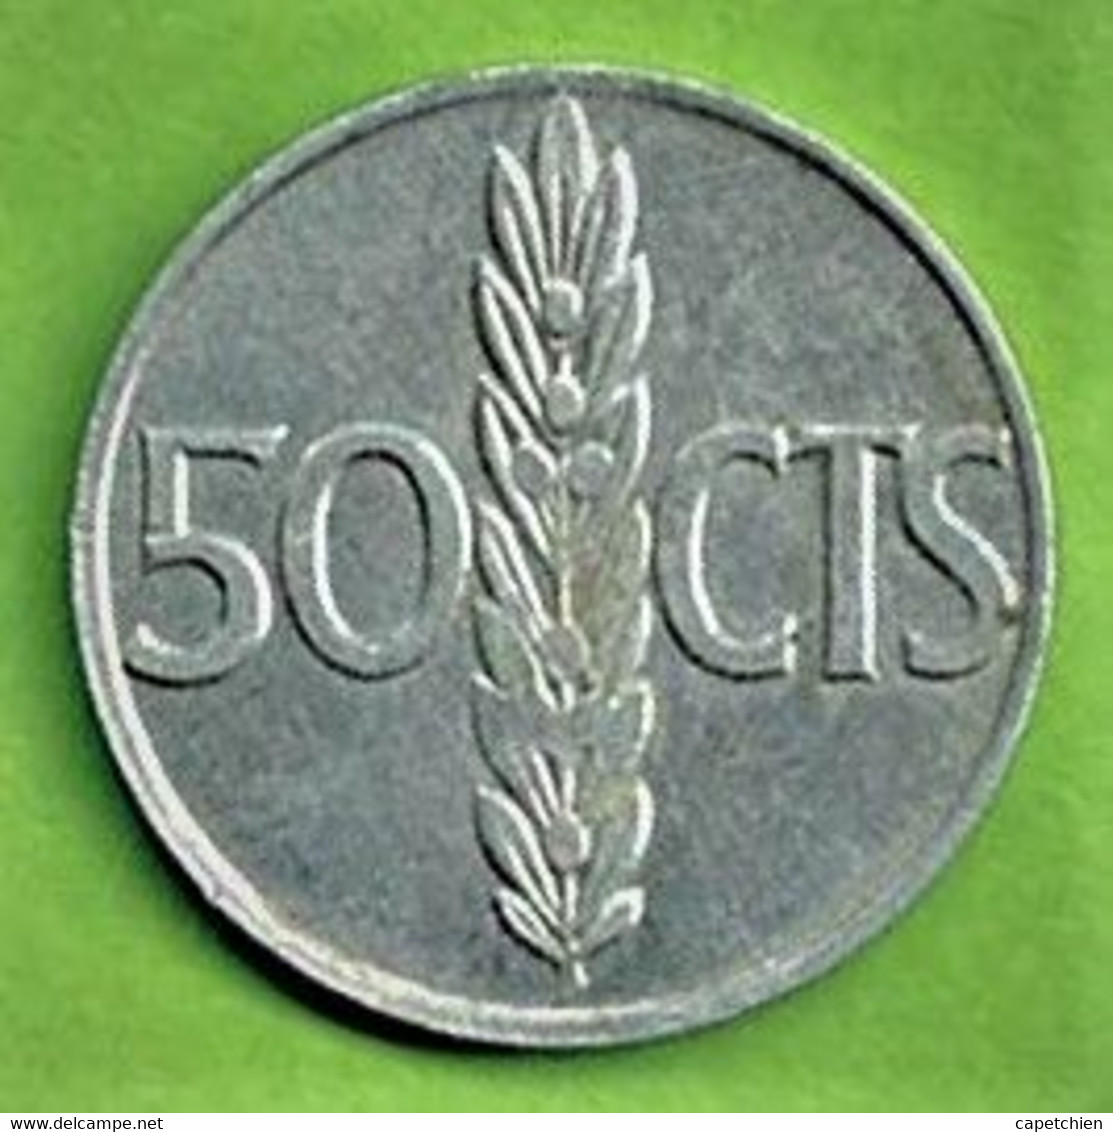 ESPAGNE / 50 CENTIMOS / 1966 / ALU / FRANCO - 50 Centiem